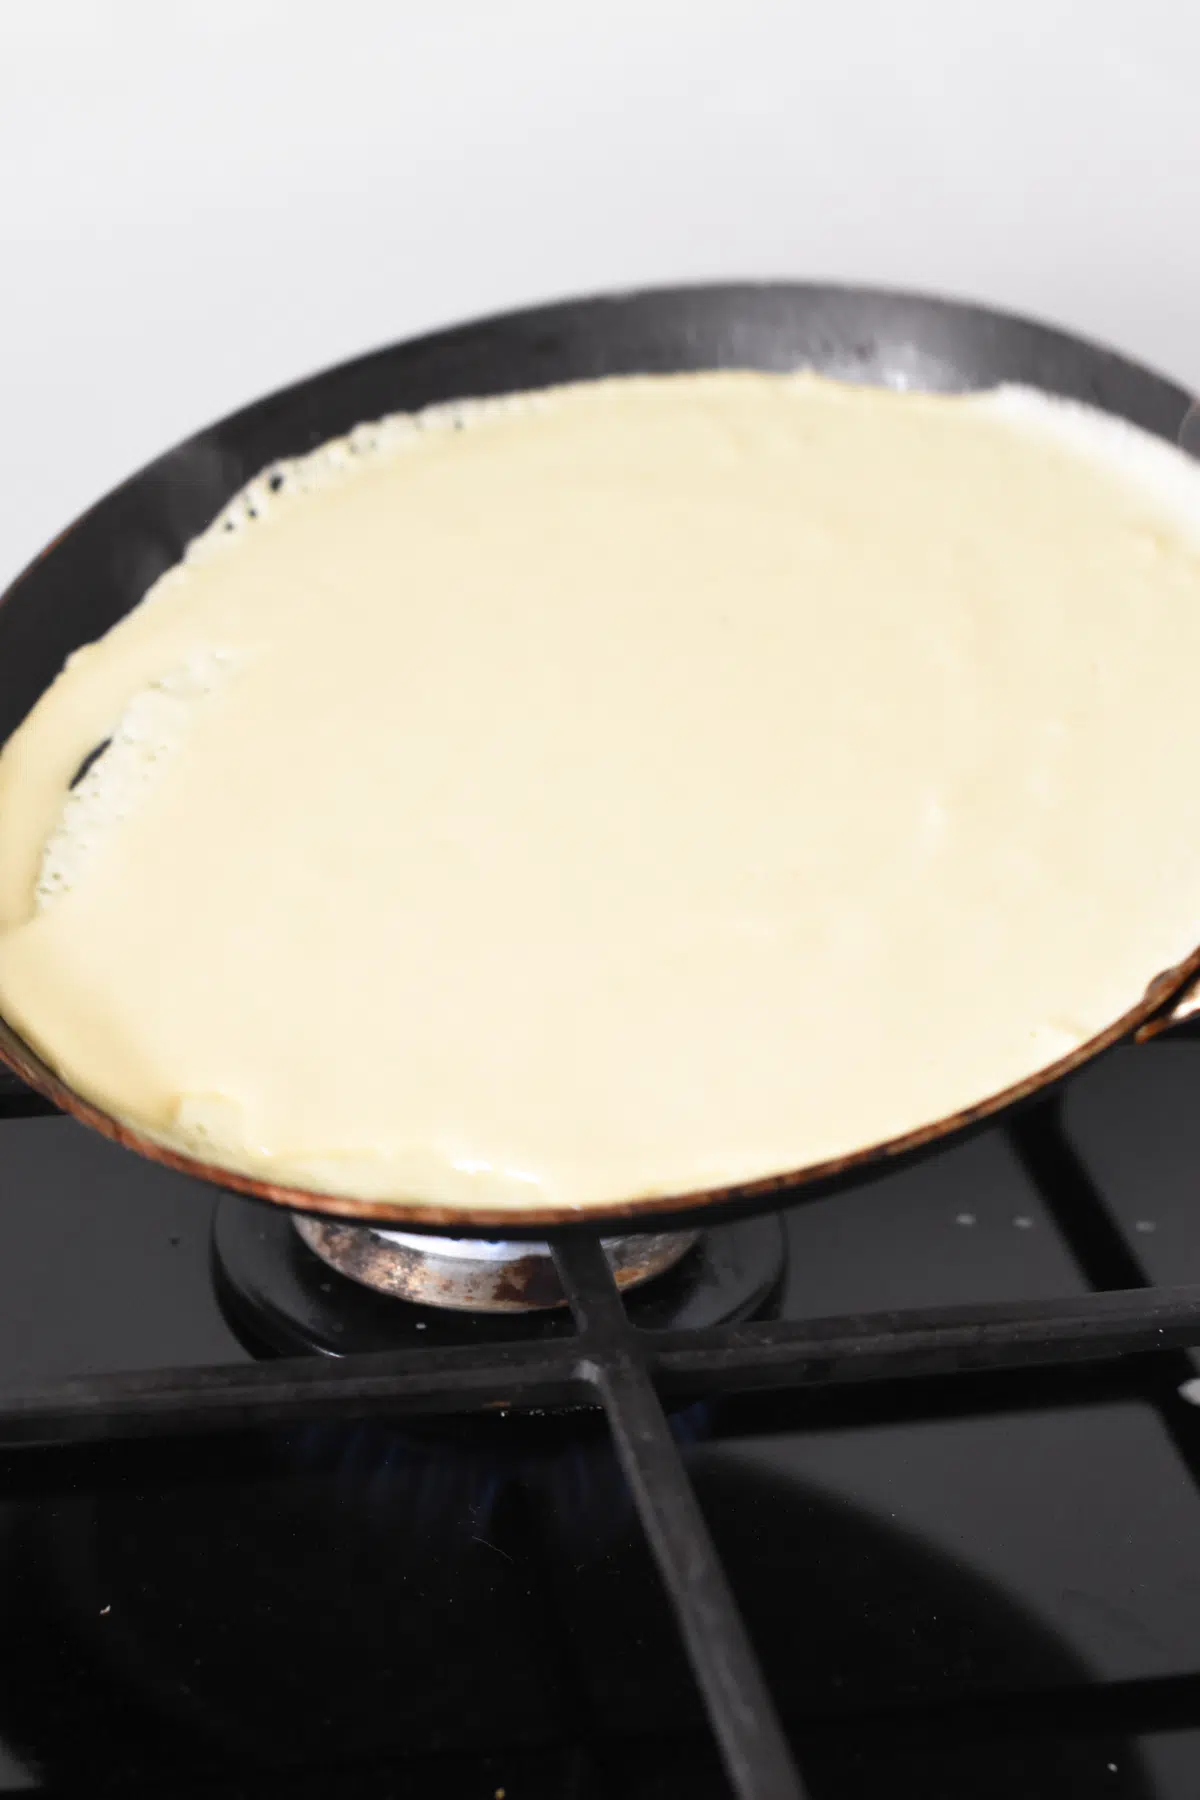 How to tilt crepe pan